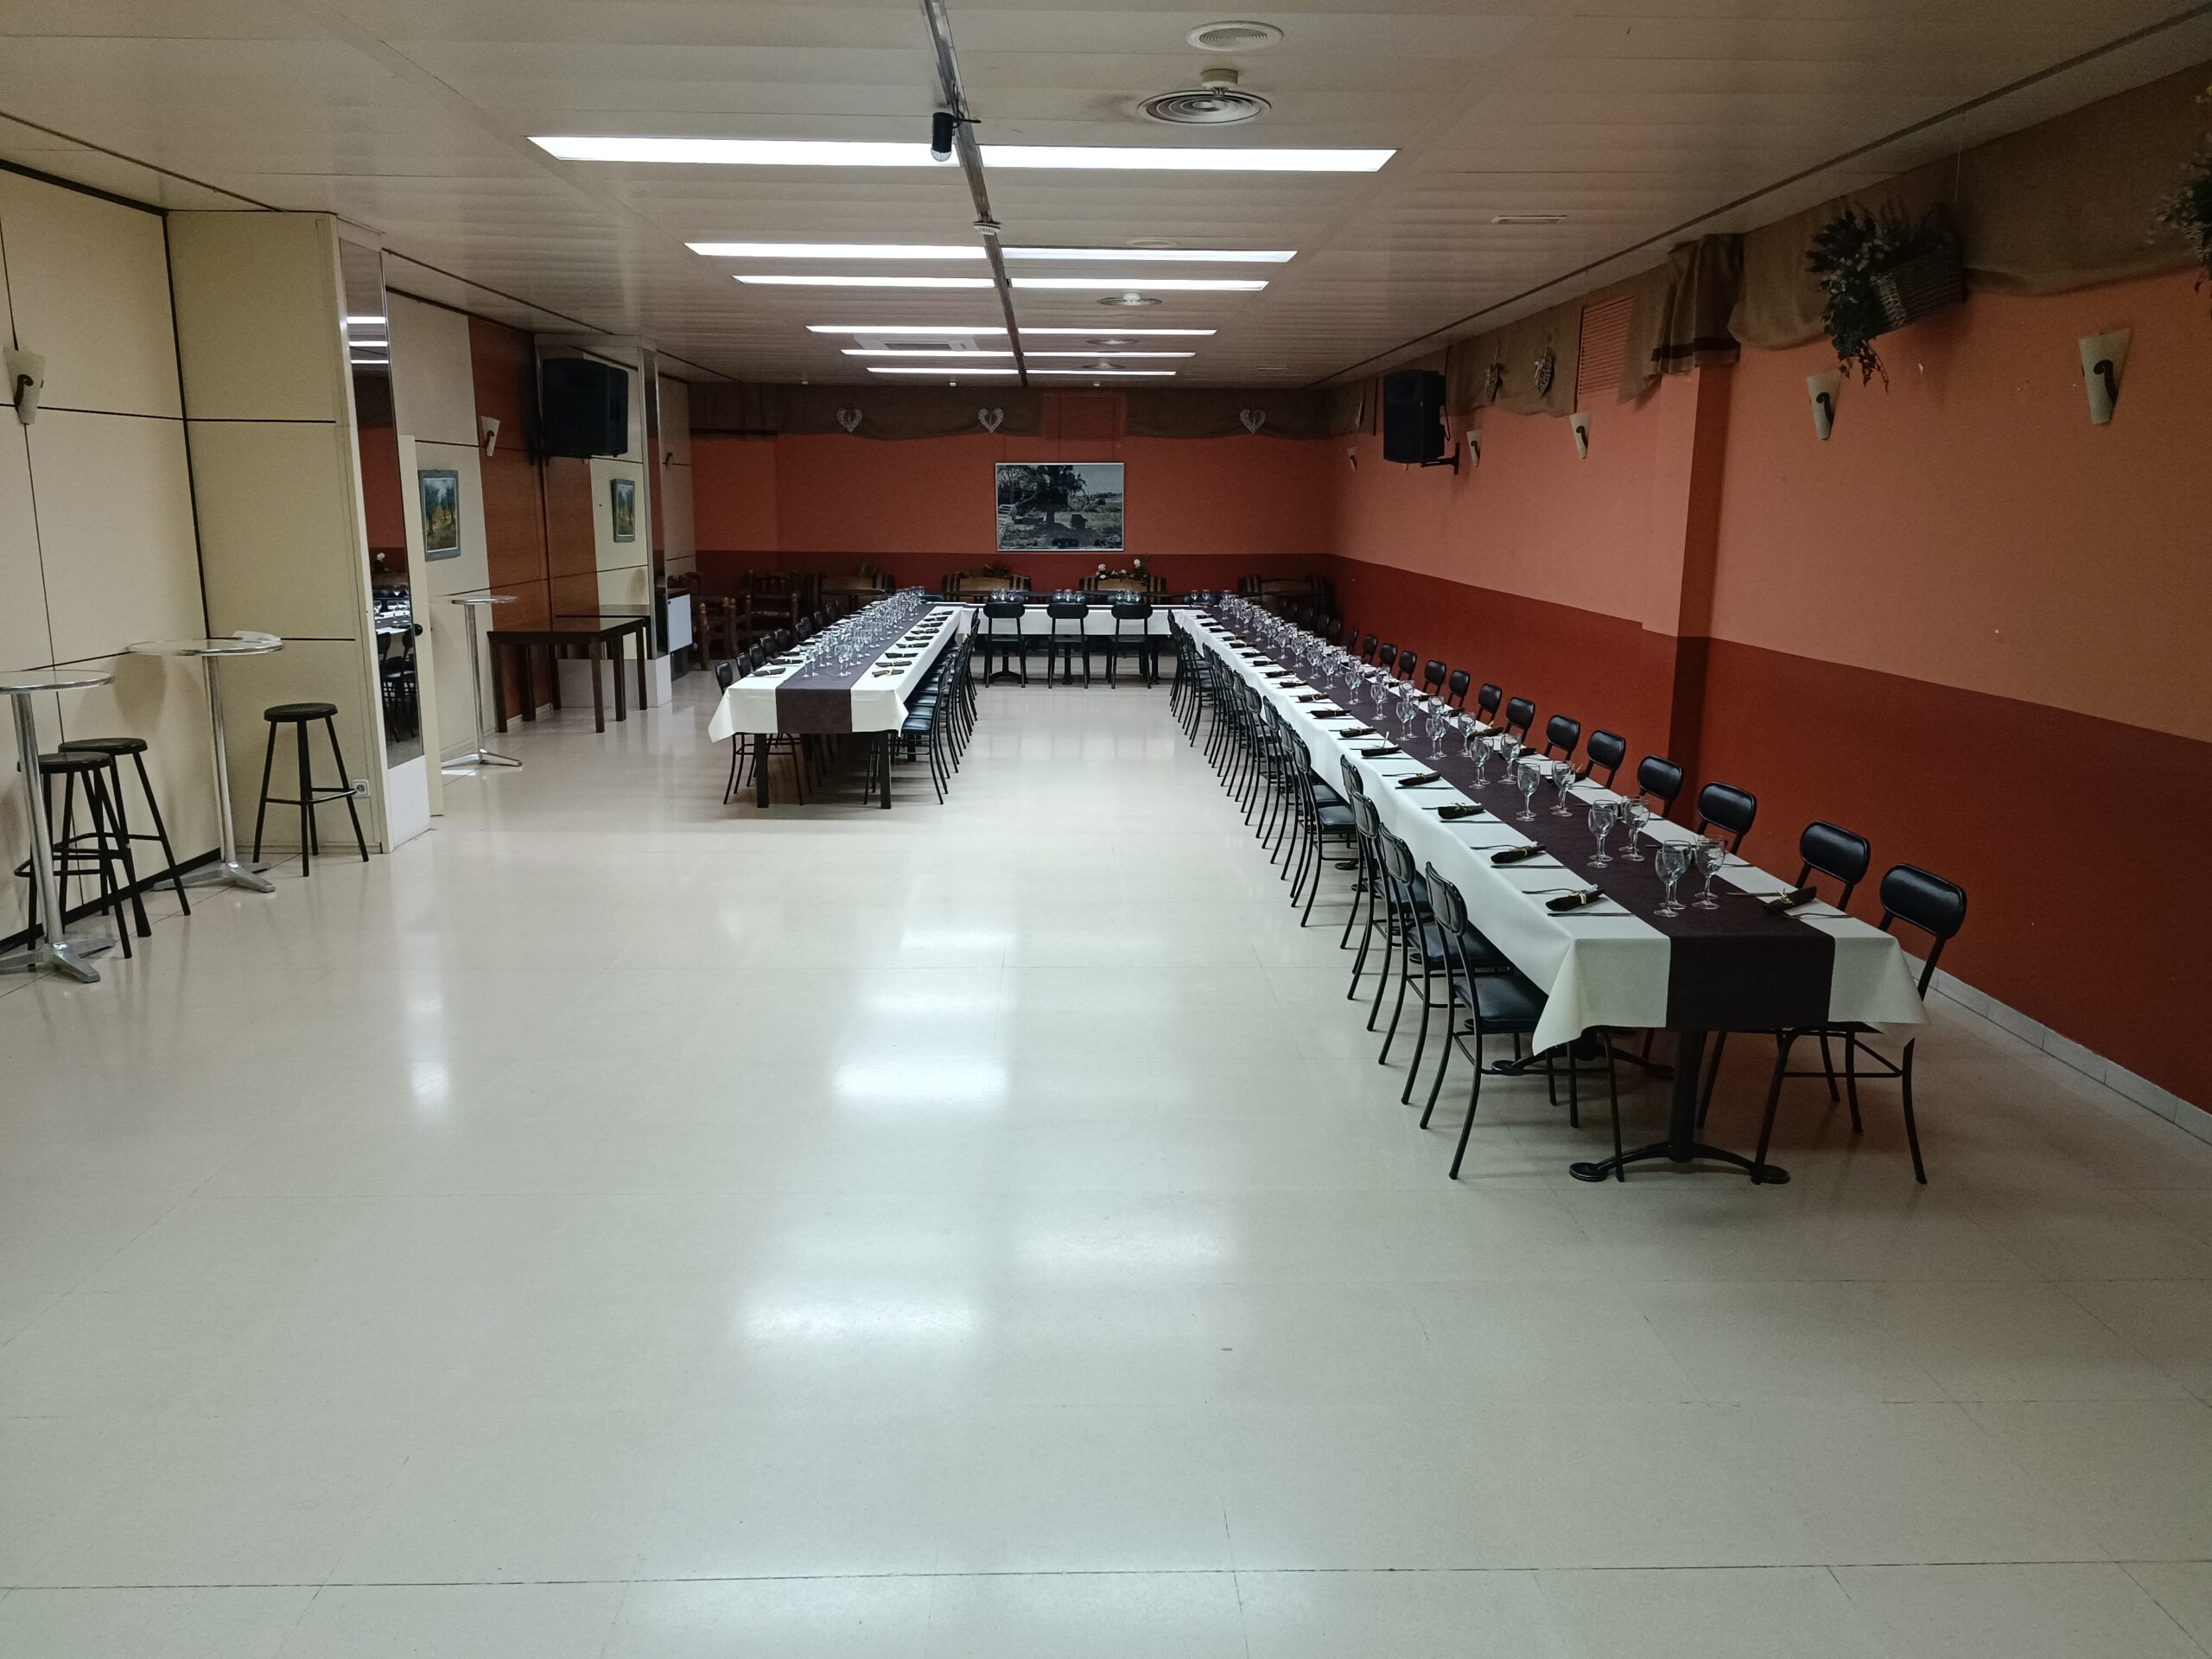 Mesa para grupos grandes y banquetes de la cafetería La Penedès